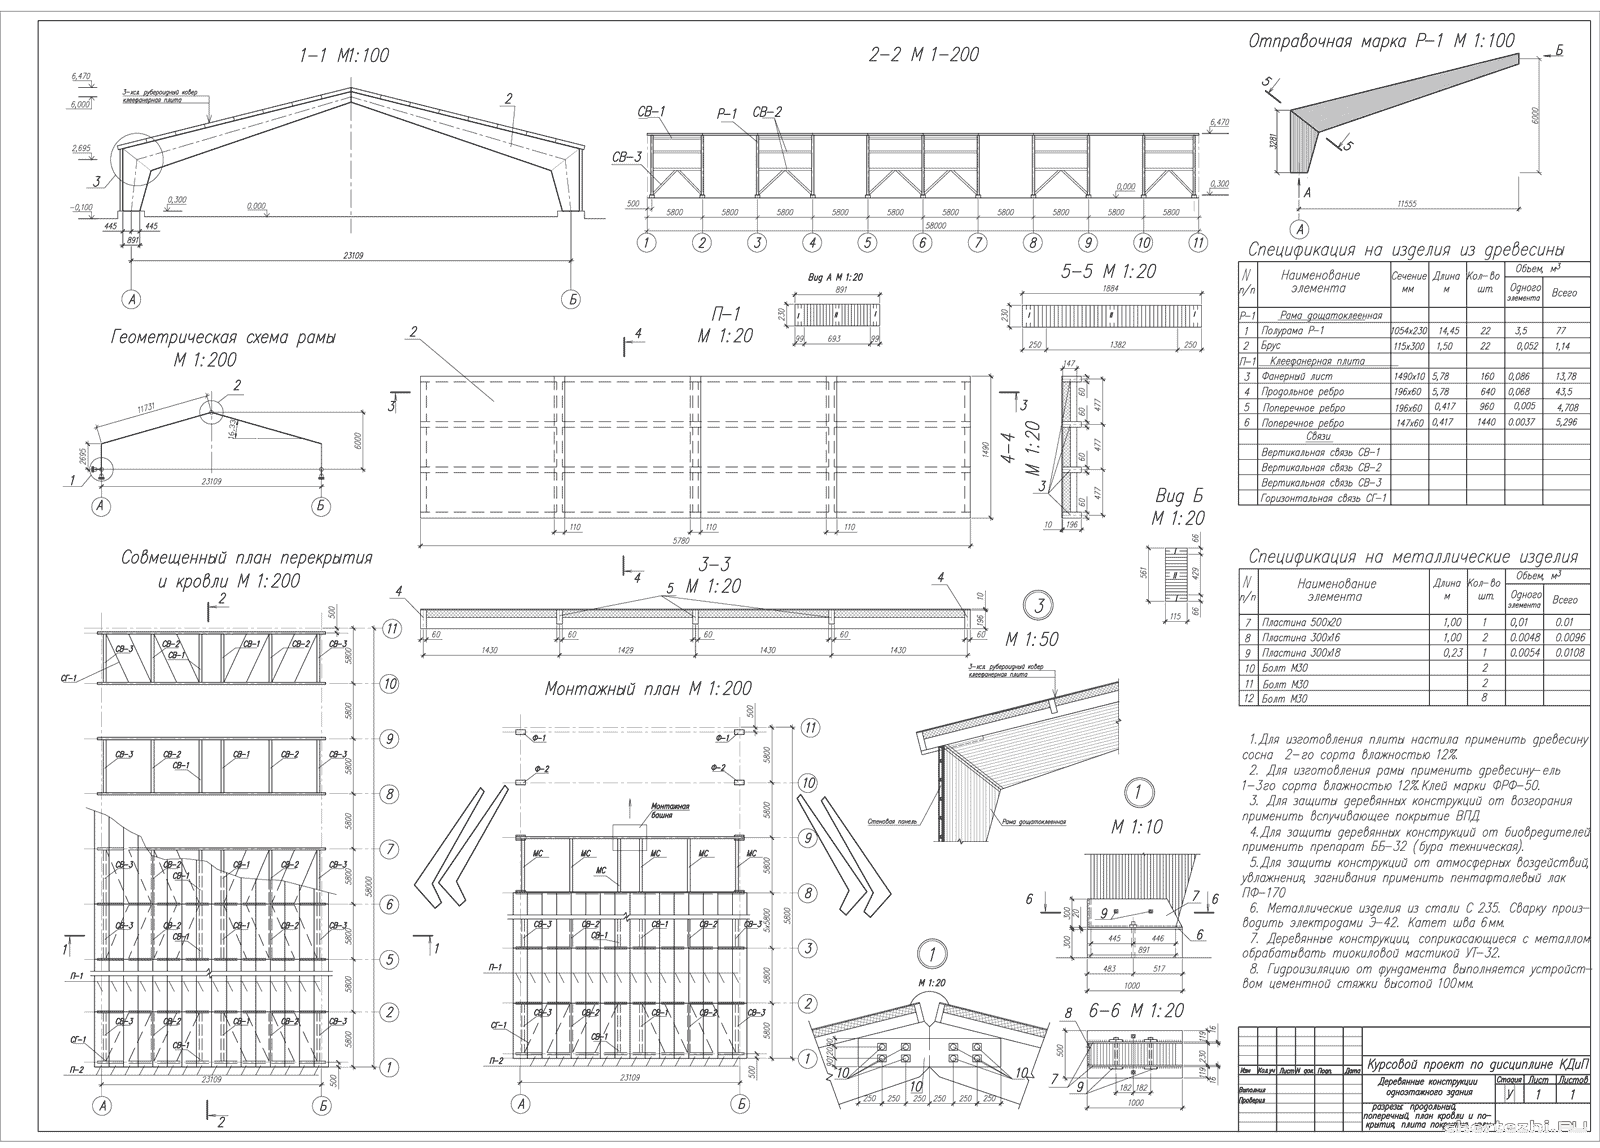 Курсовой проект - Деревянные конструкции одноэтажного здания / Расчет клеефанерной плиты покрытия с одной верхней обшивкой